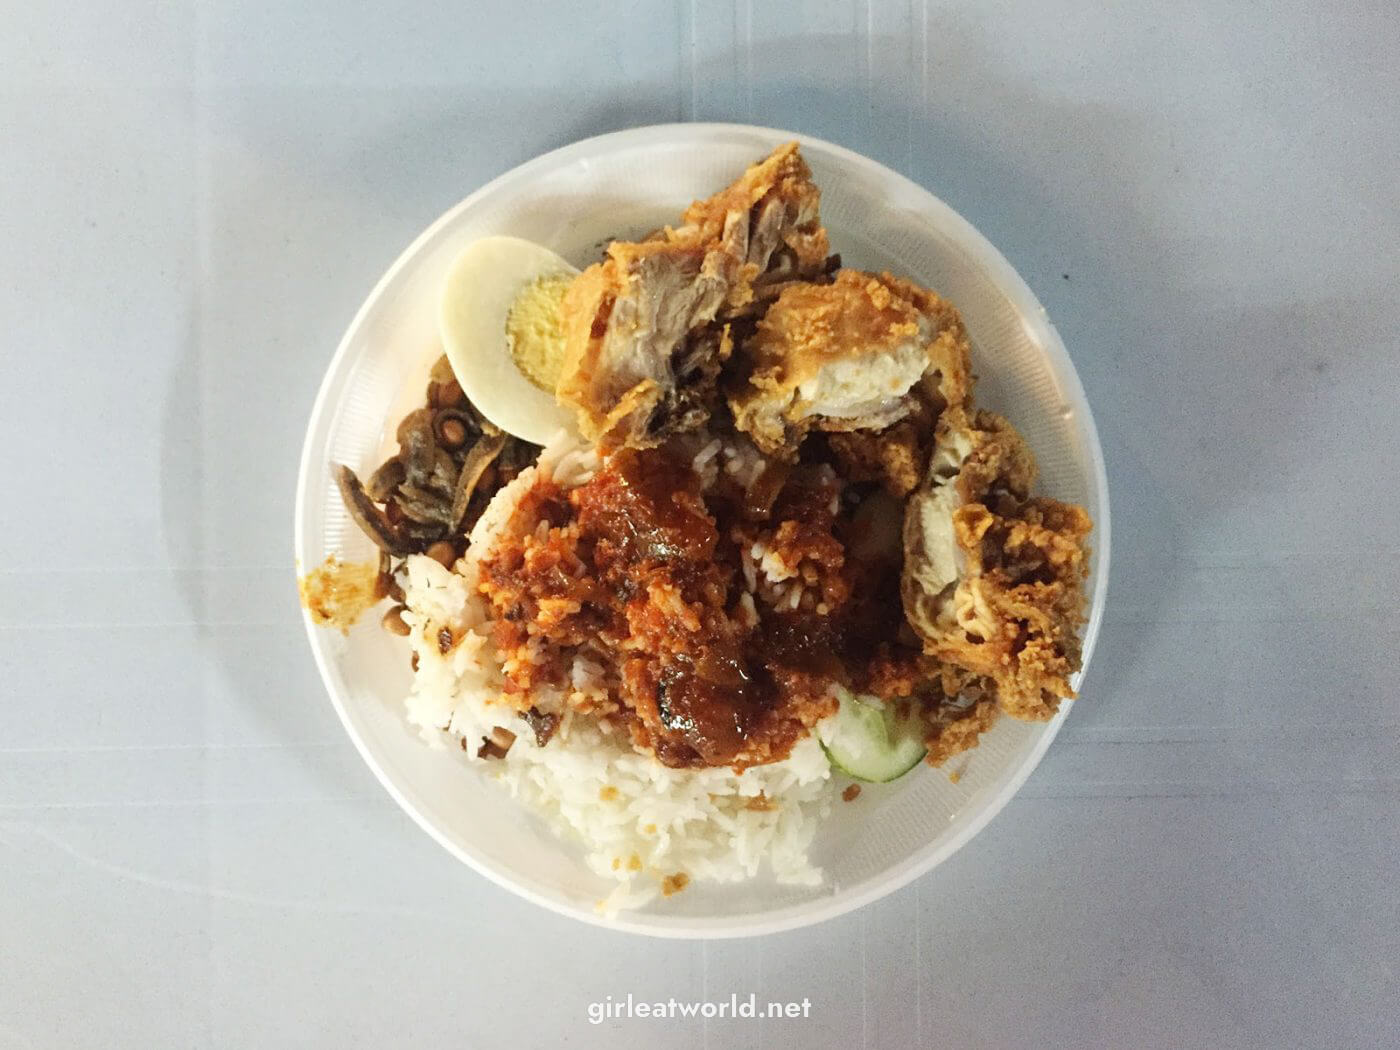 Penang Food Guide - Nasi Lemak Cili Bilis at Gurney Drive